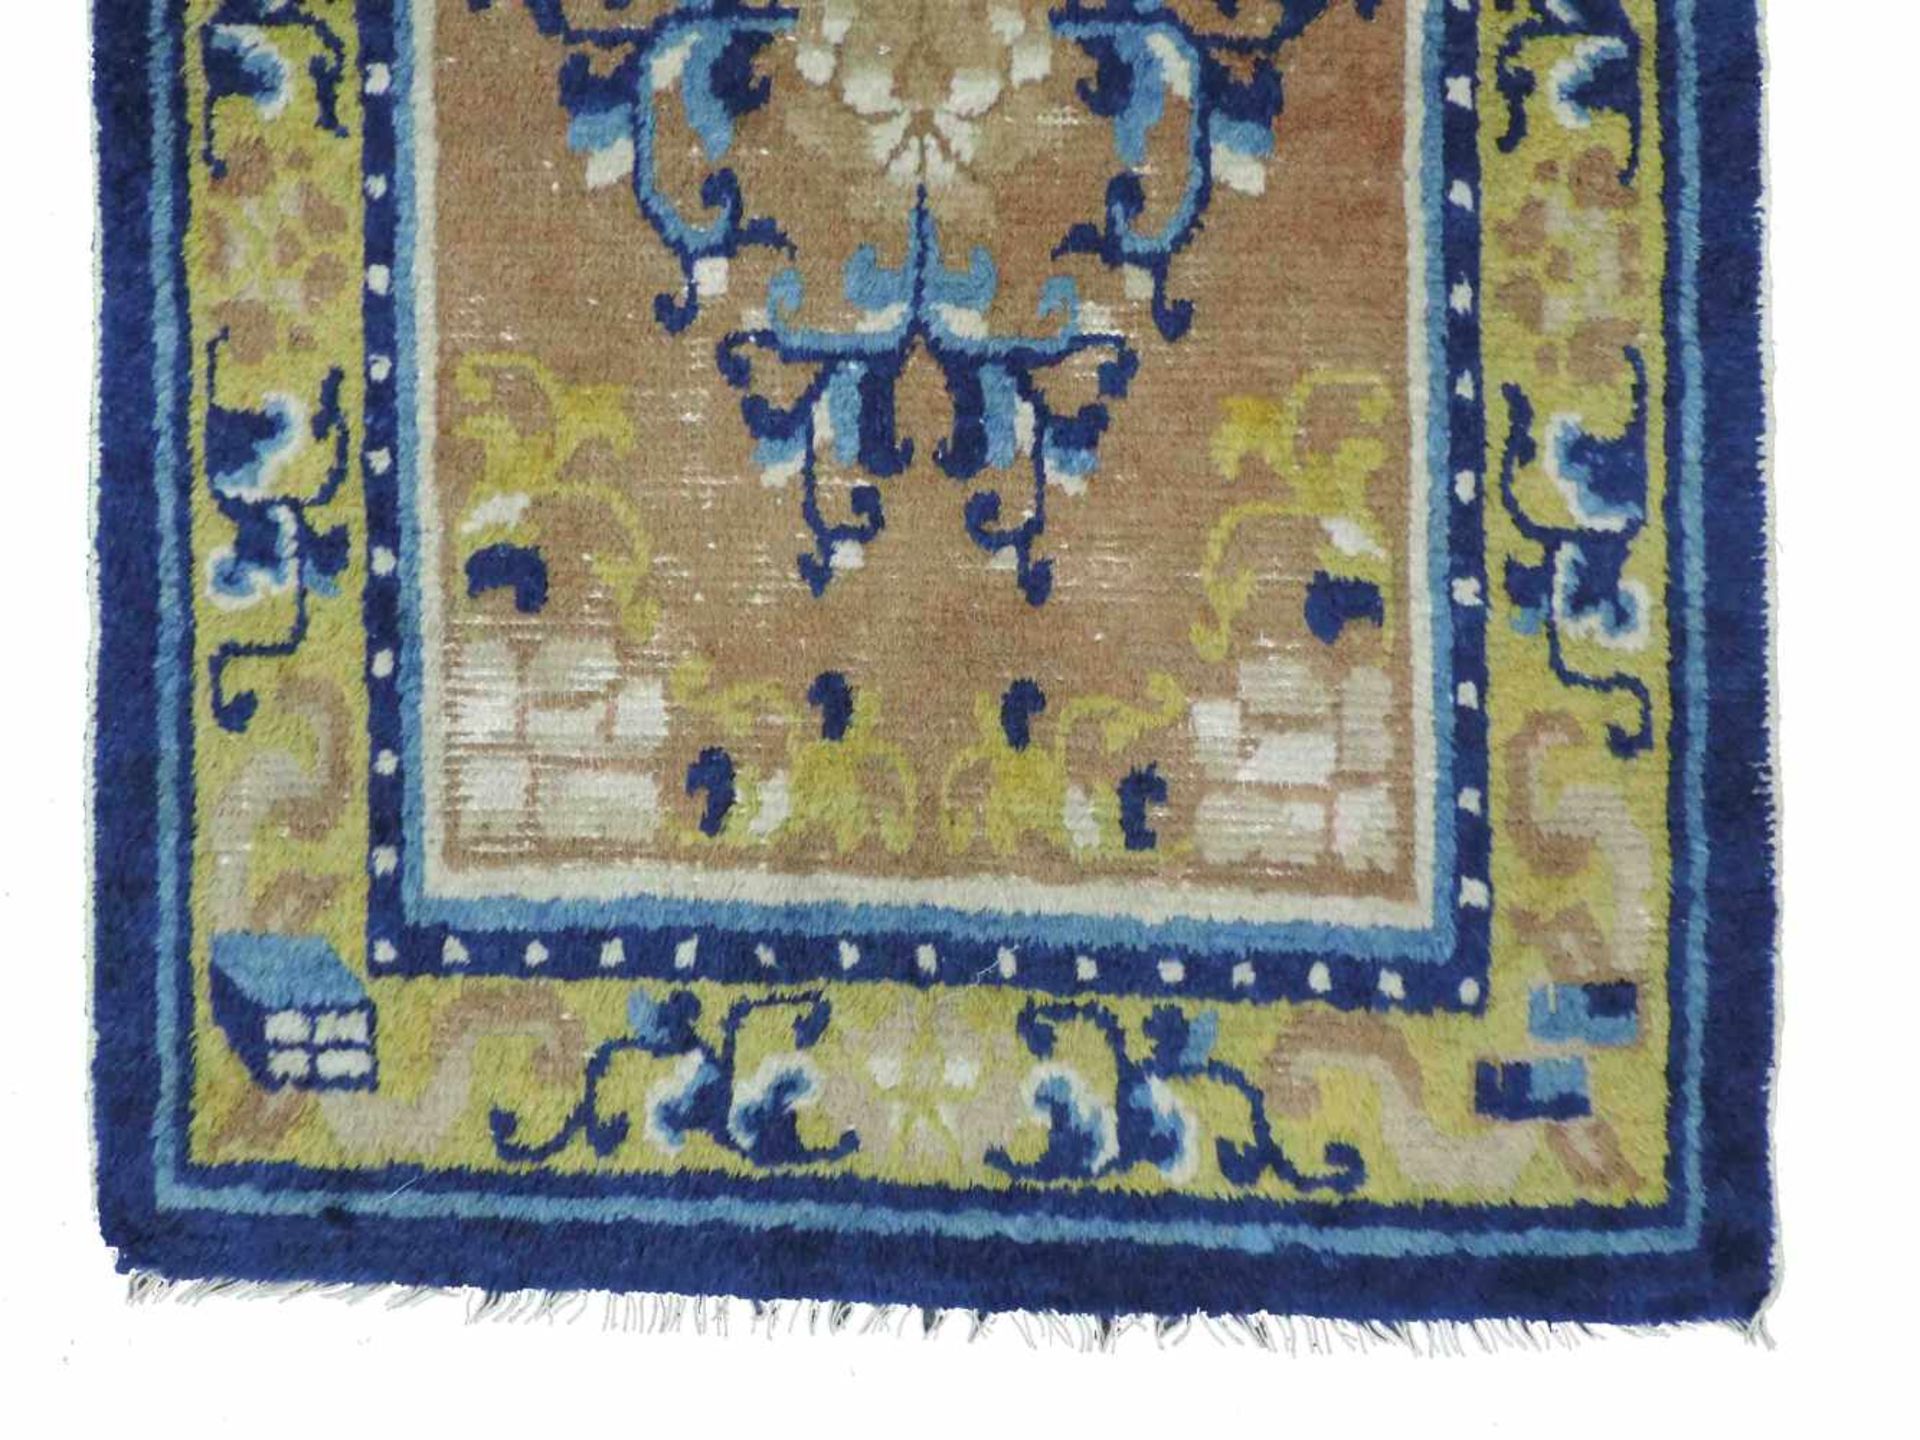 Ningxia Dorfteppich. China. Antik, um 1800. 152 cm x 76 cm. Orientteppich. Handgeknüpft. Wolle auf - Bild 2 aus 5